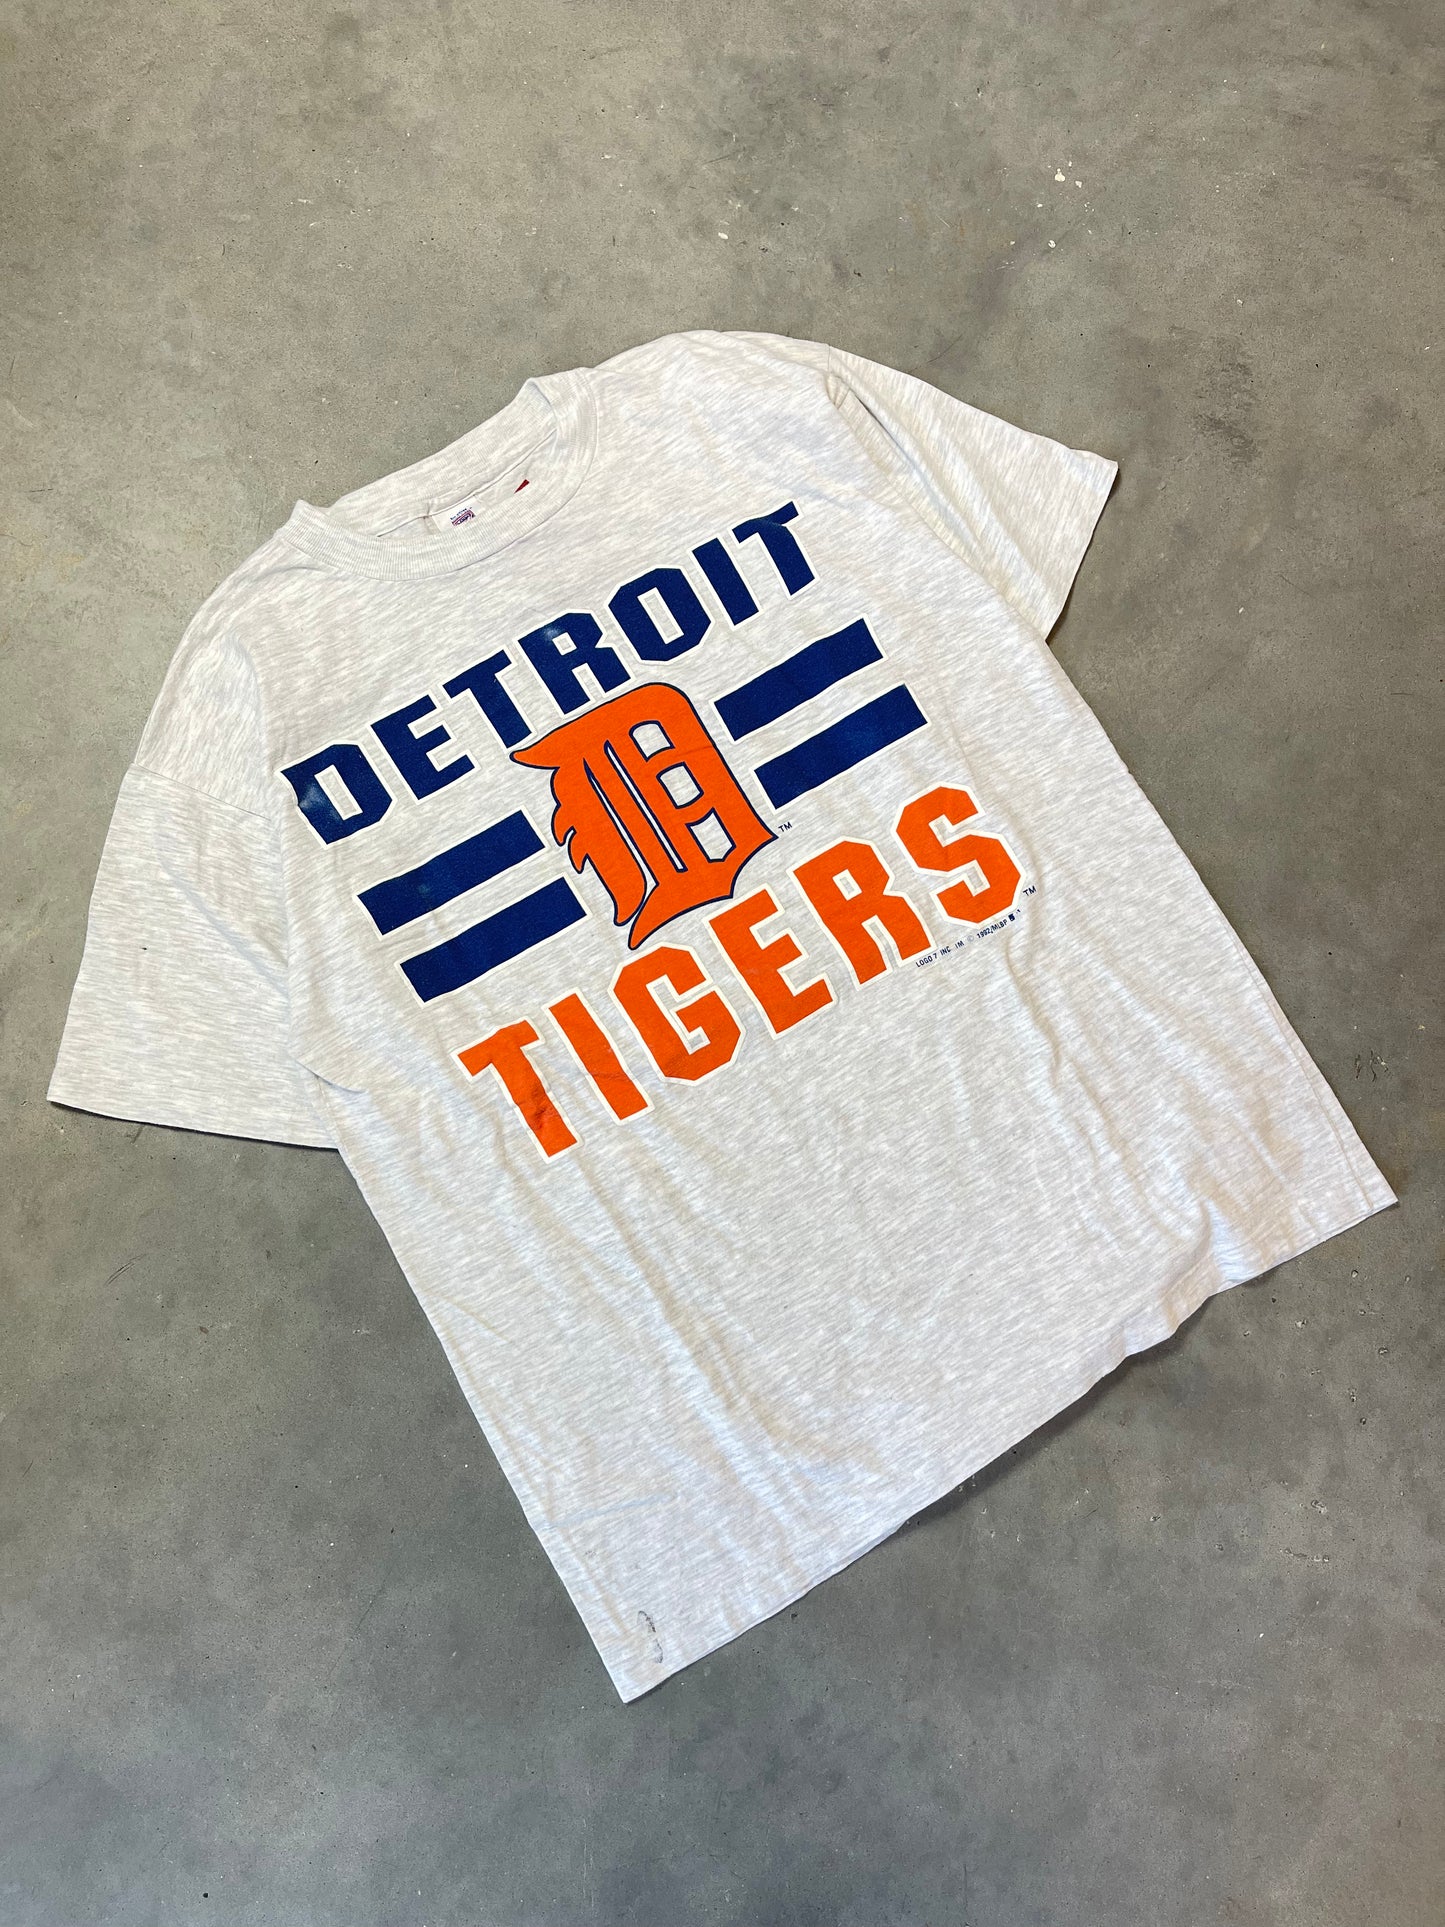 1992 Detroit Tigers Vintage MLB Baseball Tee (Large)